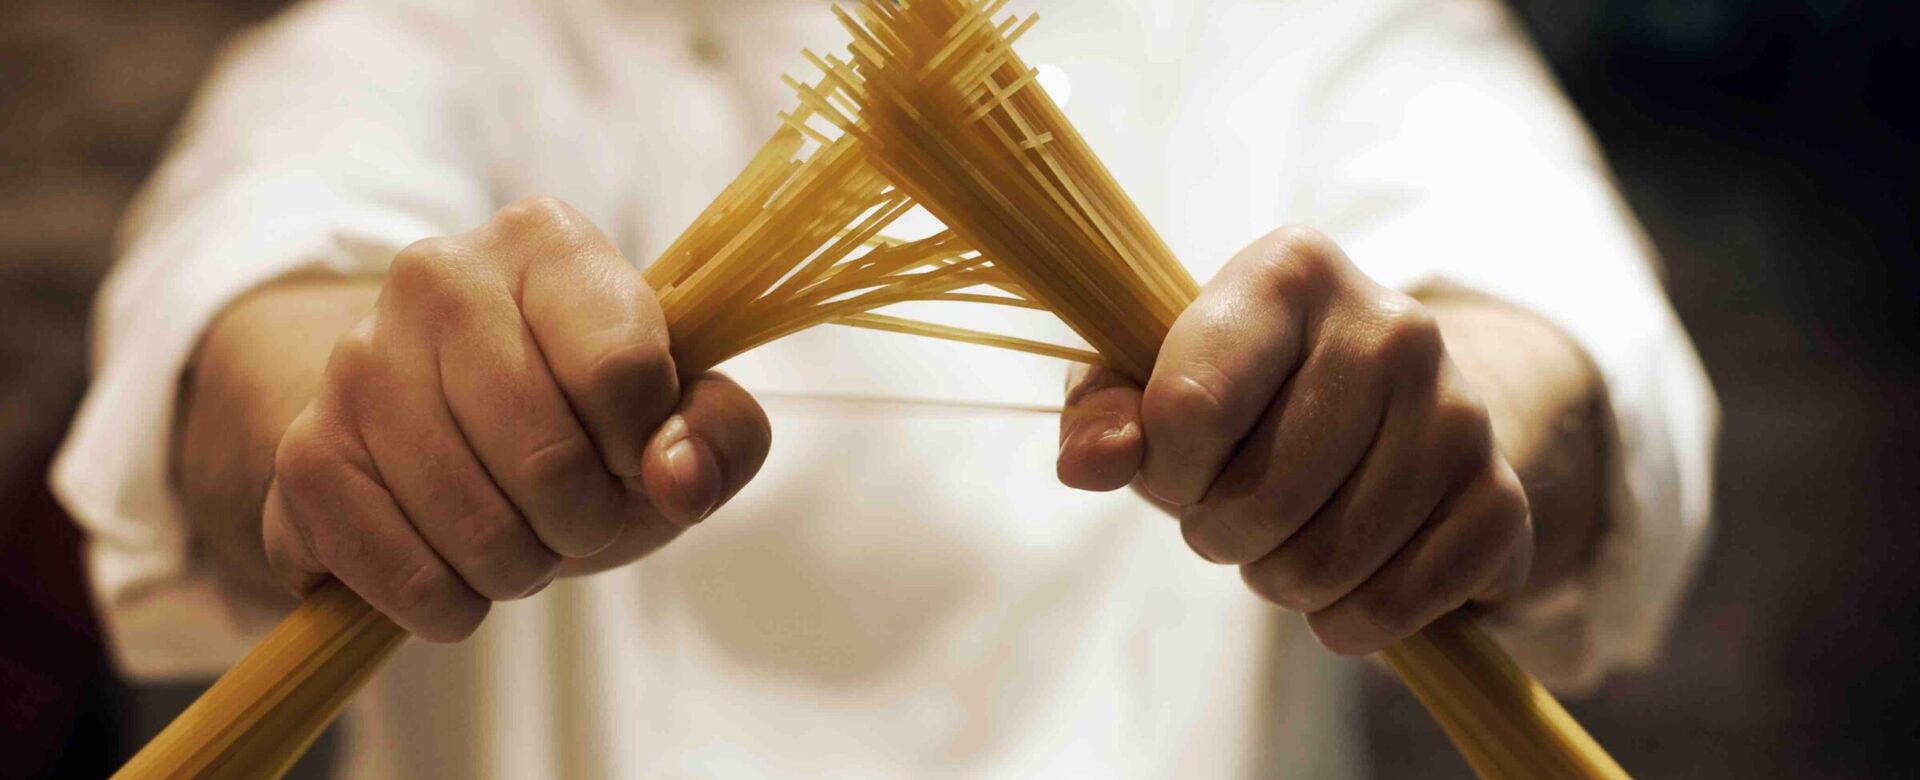 Spaghetti breken voor het koken.